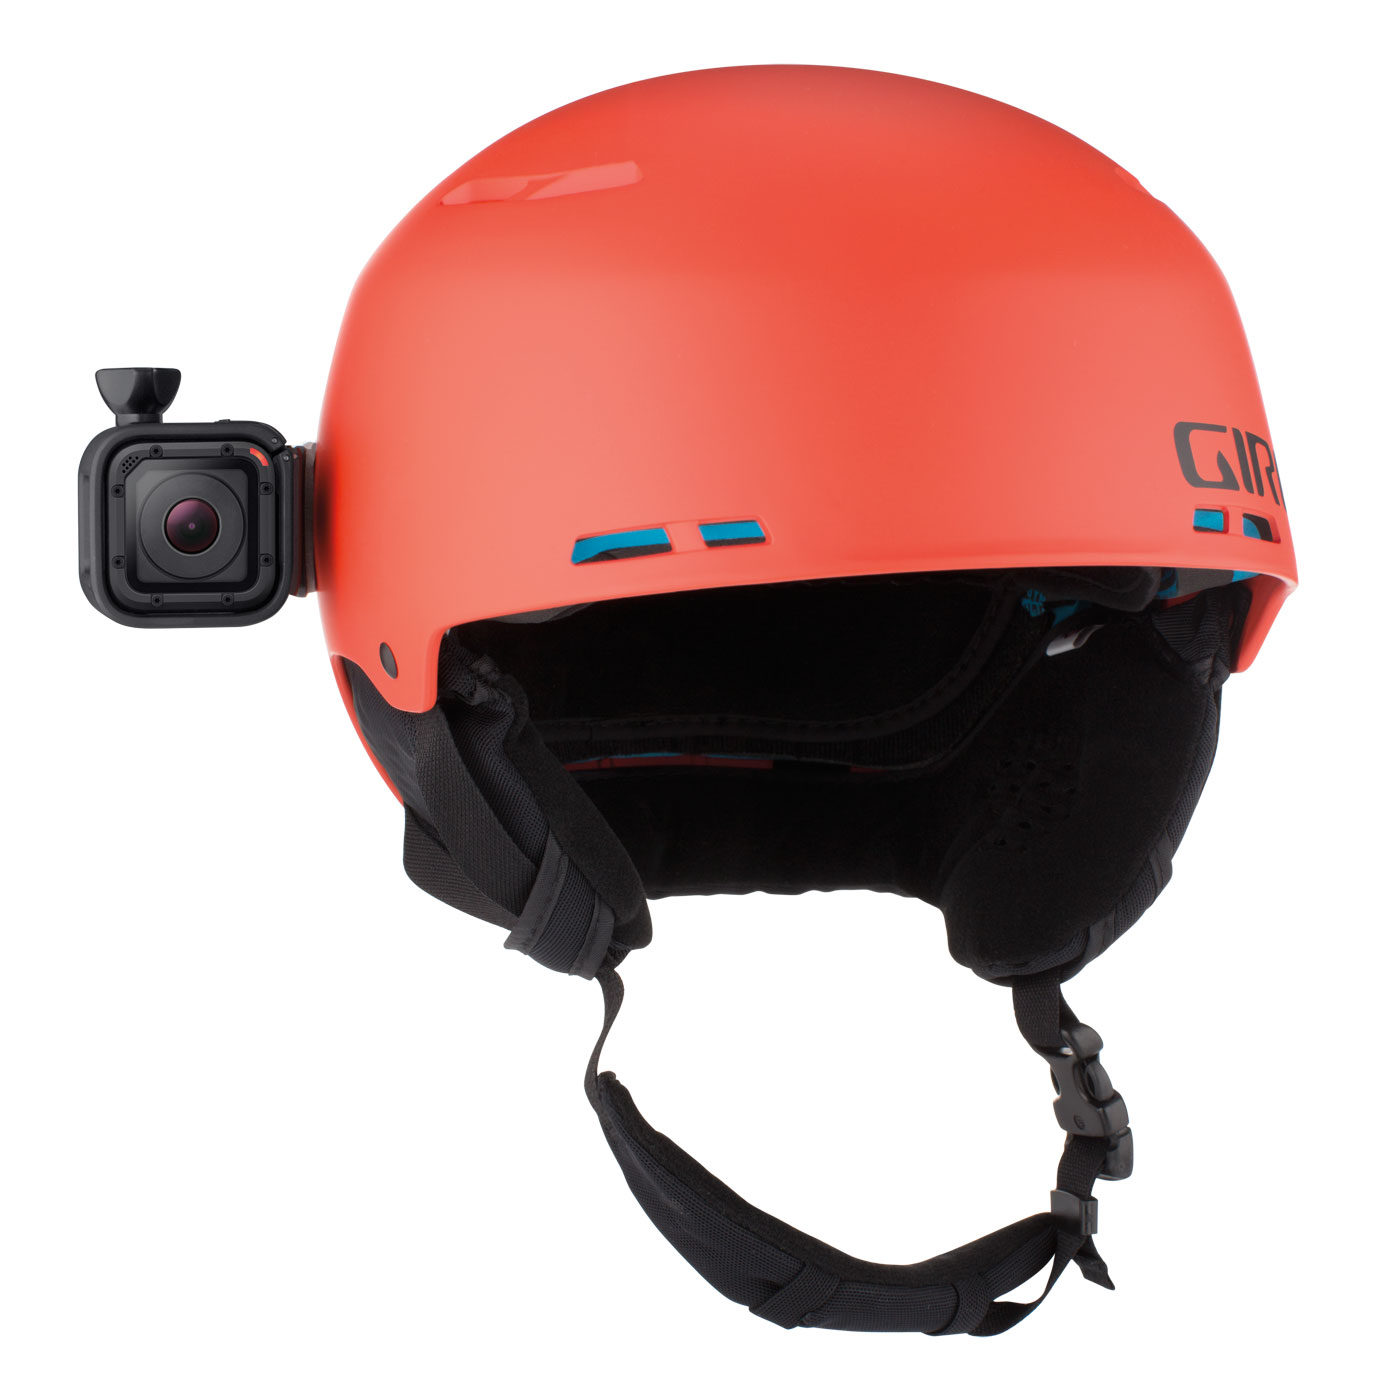 Купить камеру на шлем. Шлем горнолыжный XS GOPRO. Камера GOPRO hero4 session на шлем. Hero session GOPRO на шлеме. GOPRO шлем "System 6".